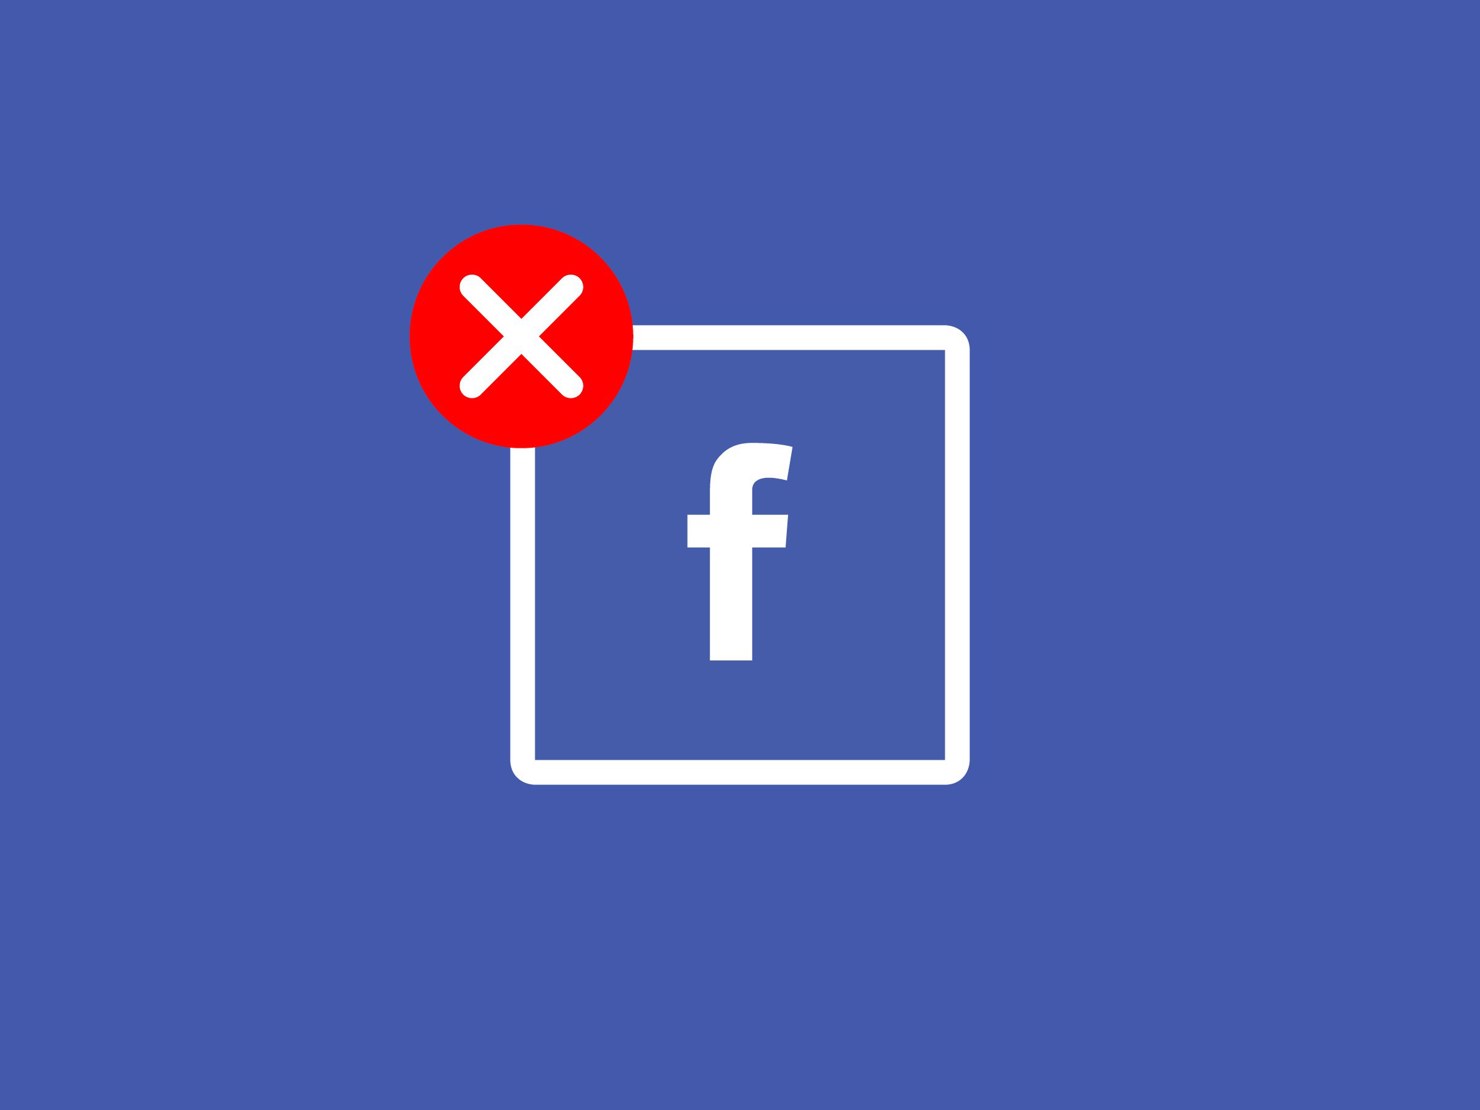 Chiến dịch tẩy chay Facebook liệu có đánh bại được Mark Zuckerberg?